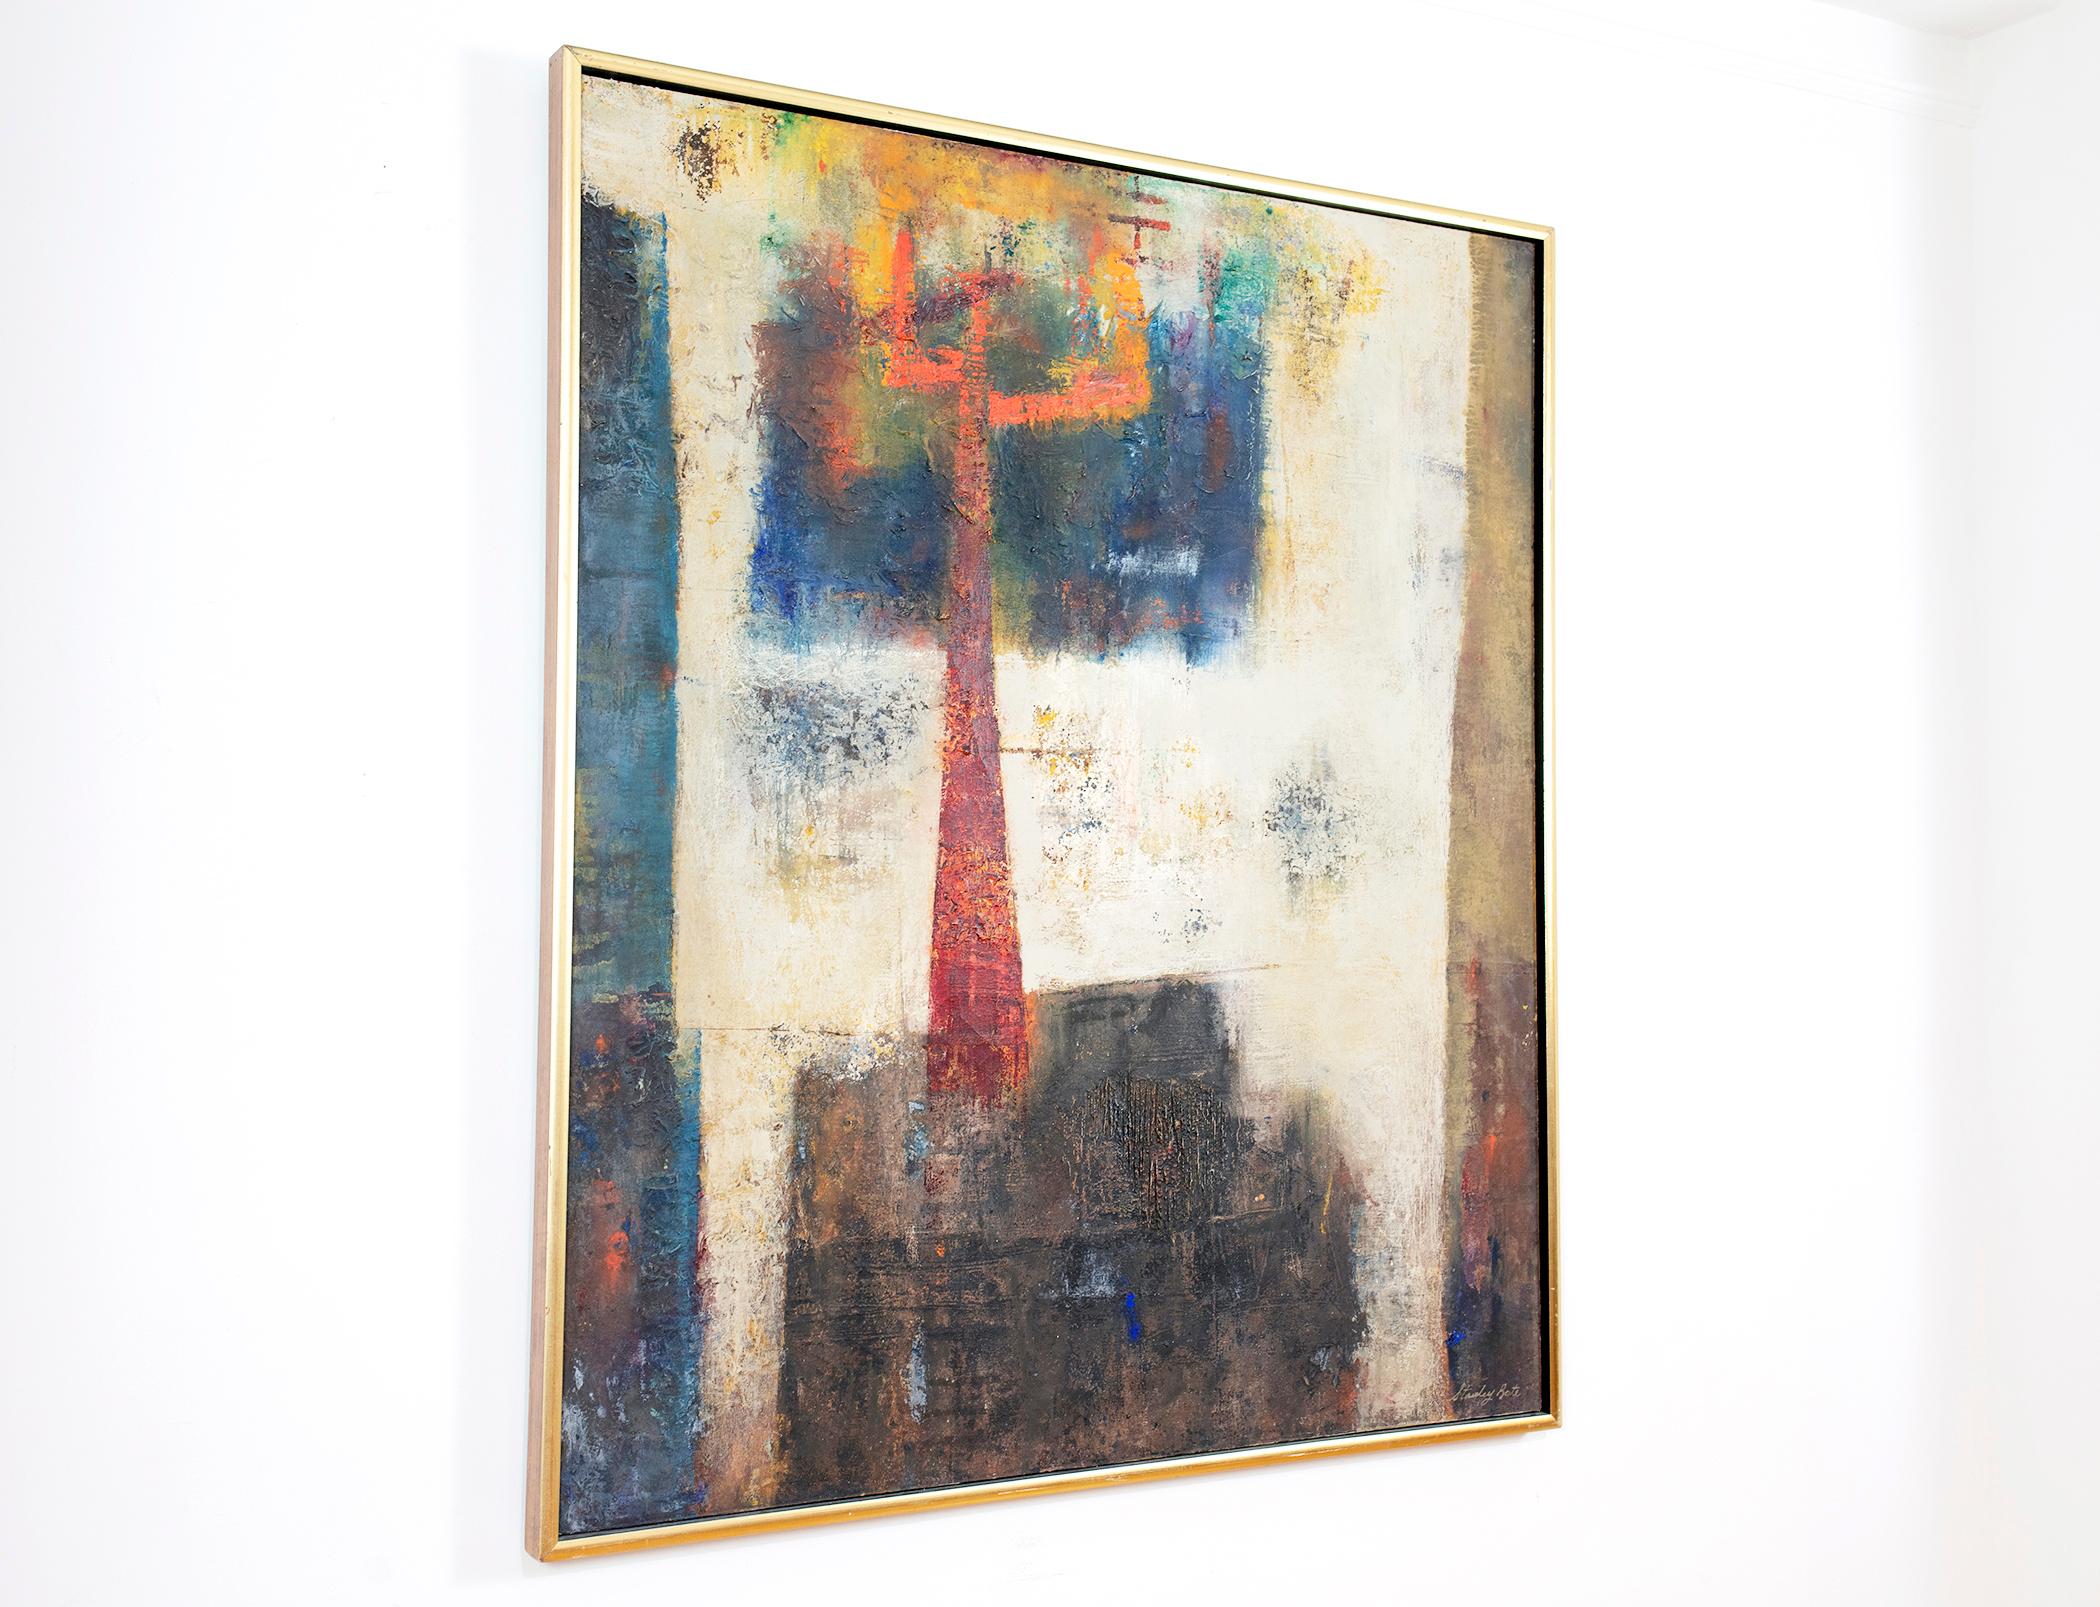 Cette peinture abstraite de l'artiste moderniste Stanley Bate est une peinture à l'huile abstraite sur toile présentant une forme géométrique rouge vif au centre de la composition et des rectangles gris foncé, bleus et marron sable avec un blanc